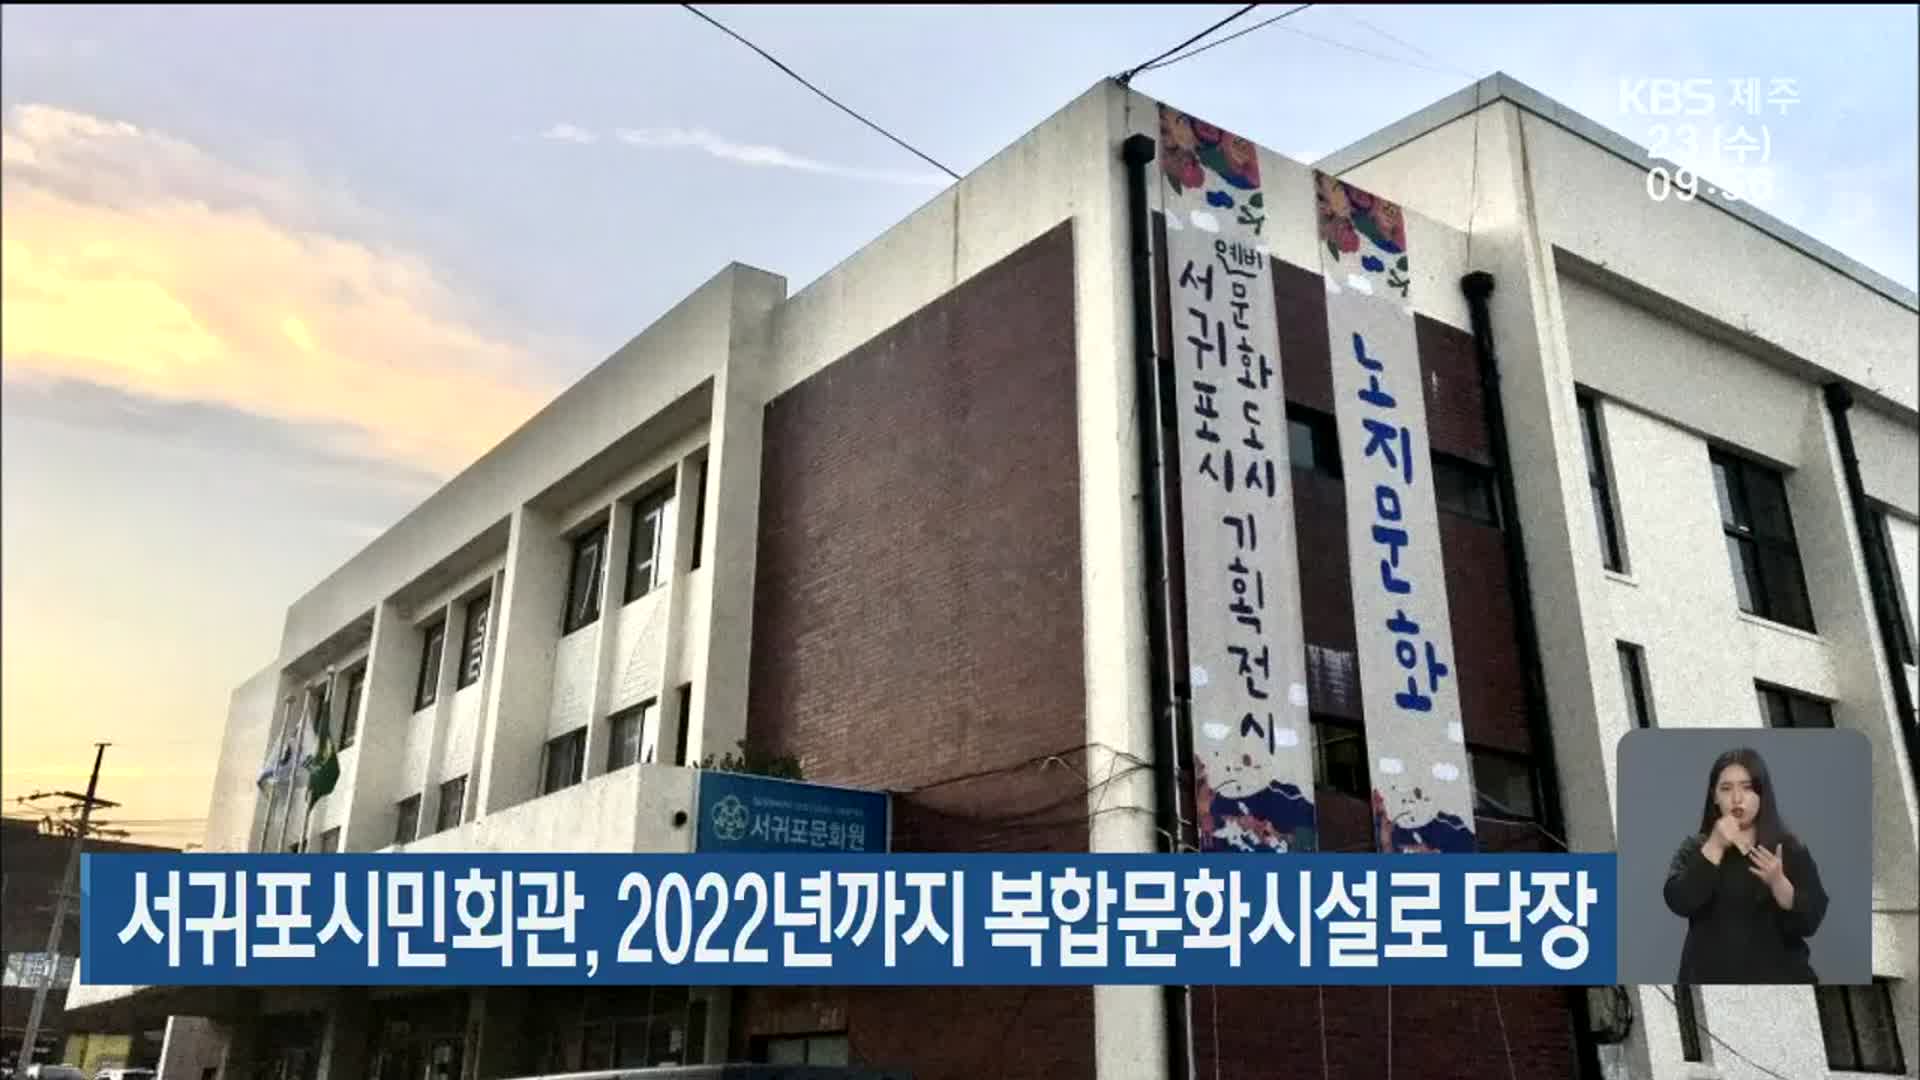 서귀포시민회관, 2022년까지 복합문화시설로 단장